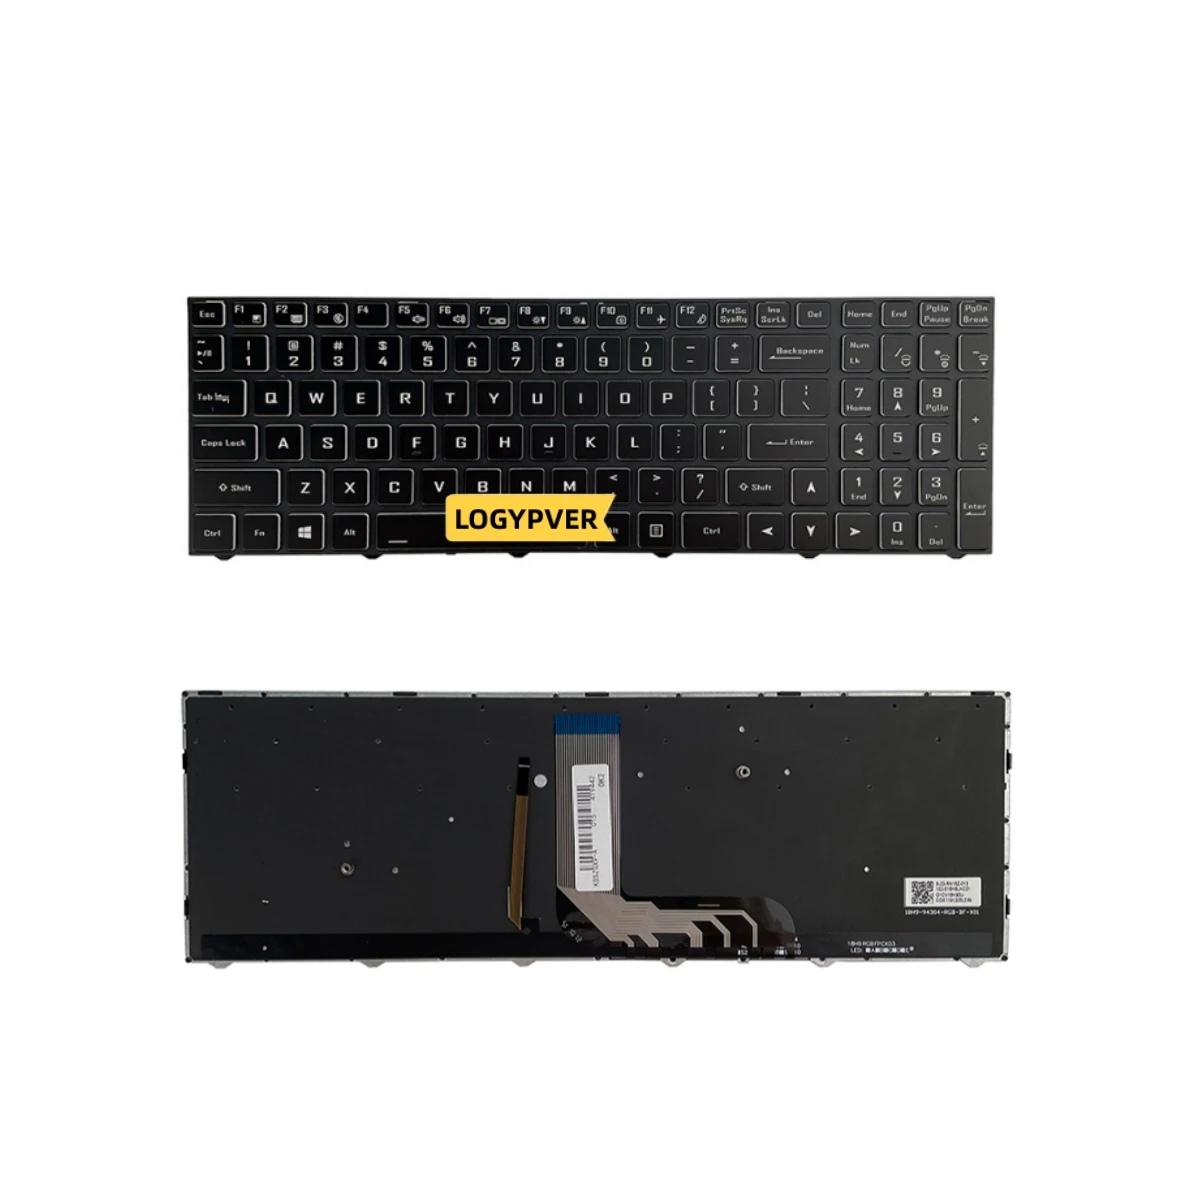 Backlit Keyboard for Hasee GX7 GX8 GX9 G10 TX9 TX8 TX7 for Clevo N960 N970 6-80-N815Z0-01D-1 Laptops Keyboards US English